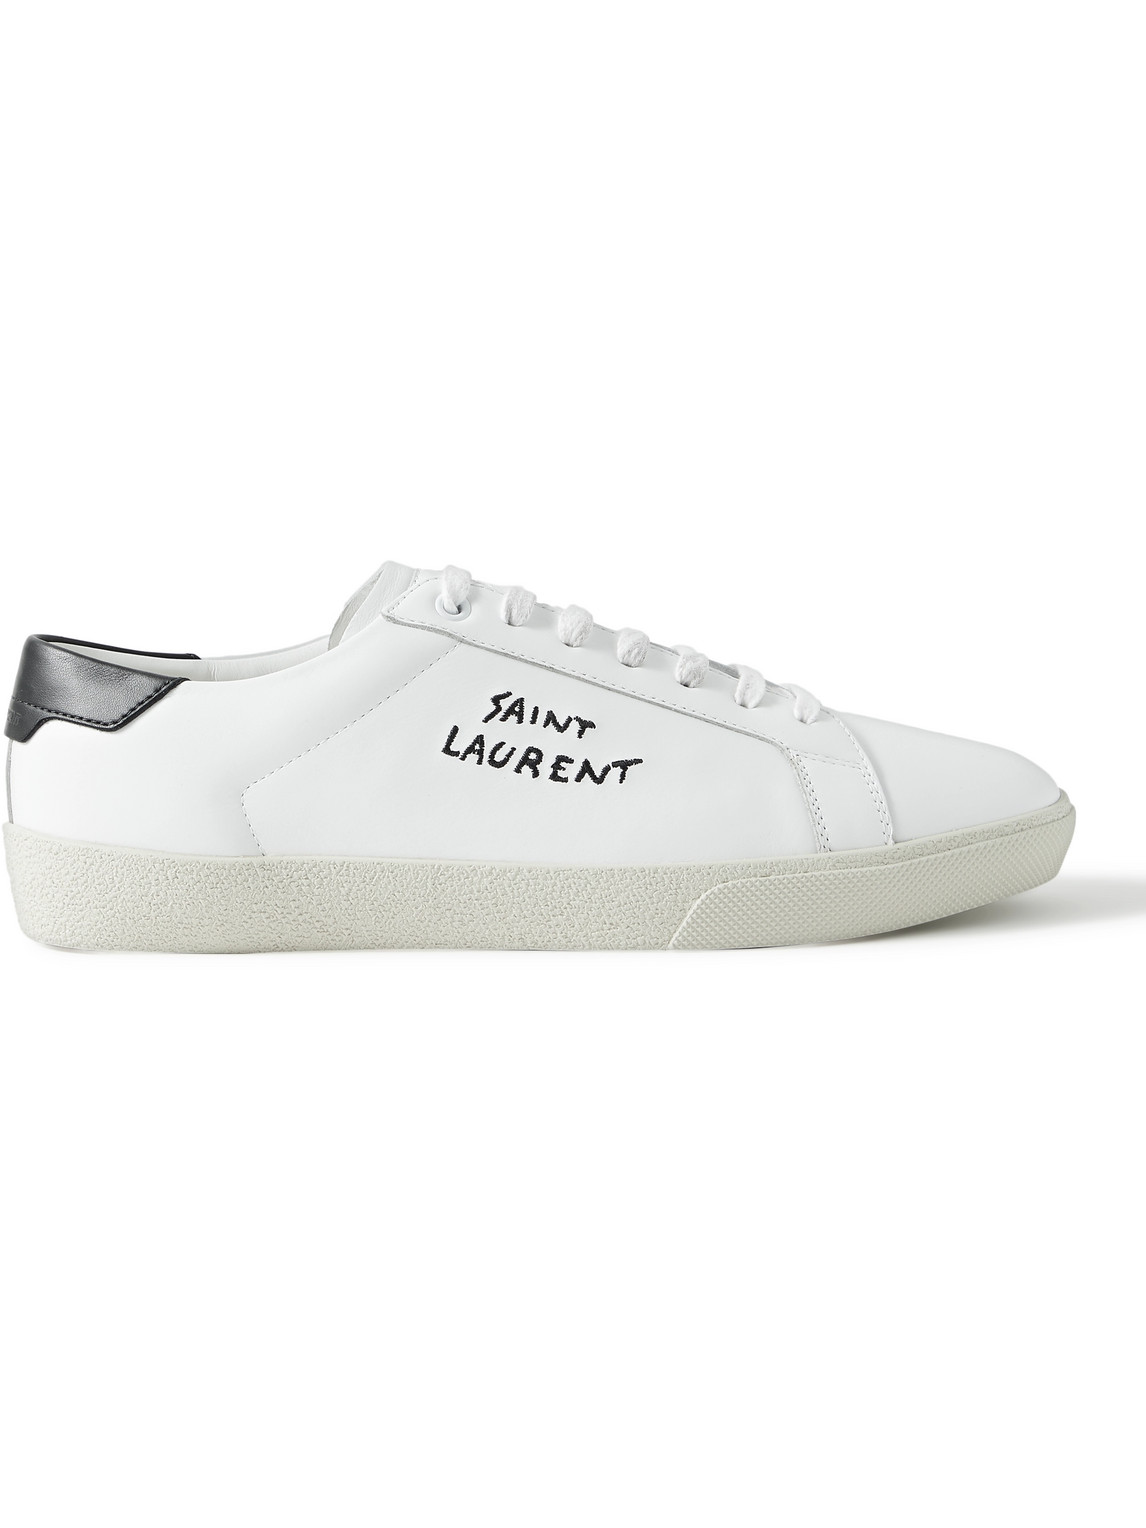 SAINT LAURENT - SL/06 Court Classic Logo-Embroidered Leather Sneakers - Men - White - EU 43 von SAINT LAURENT